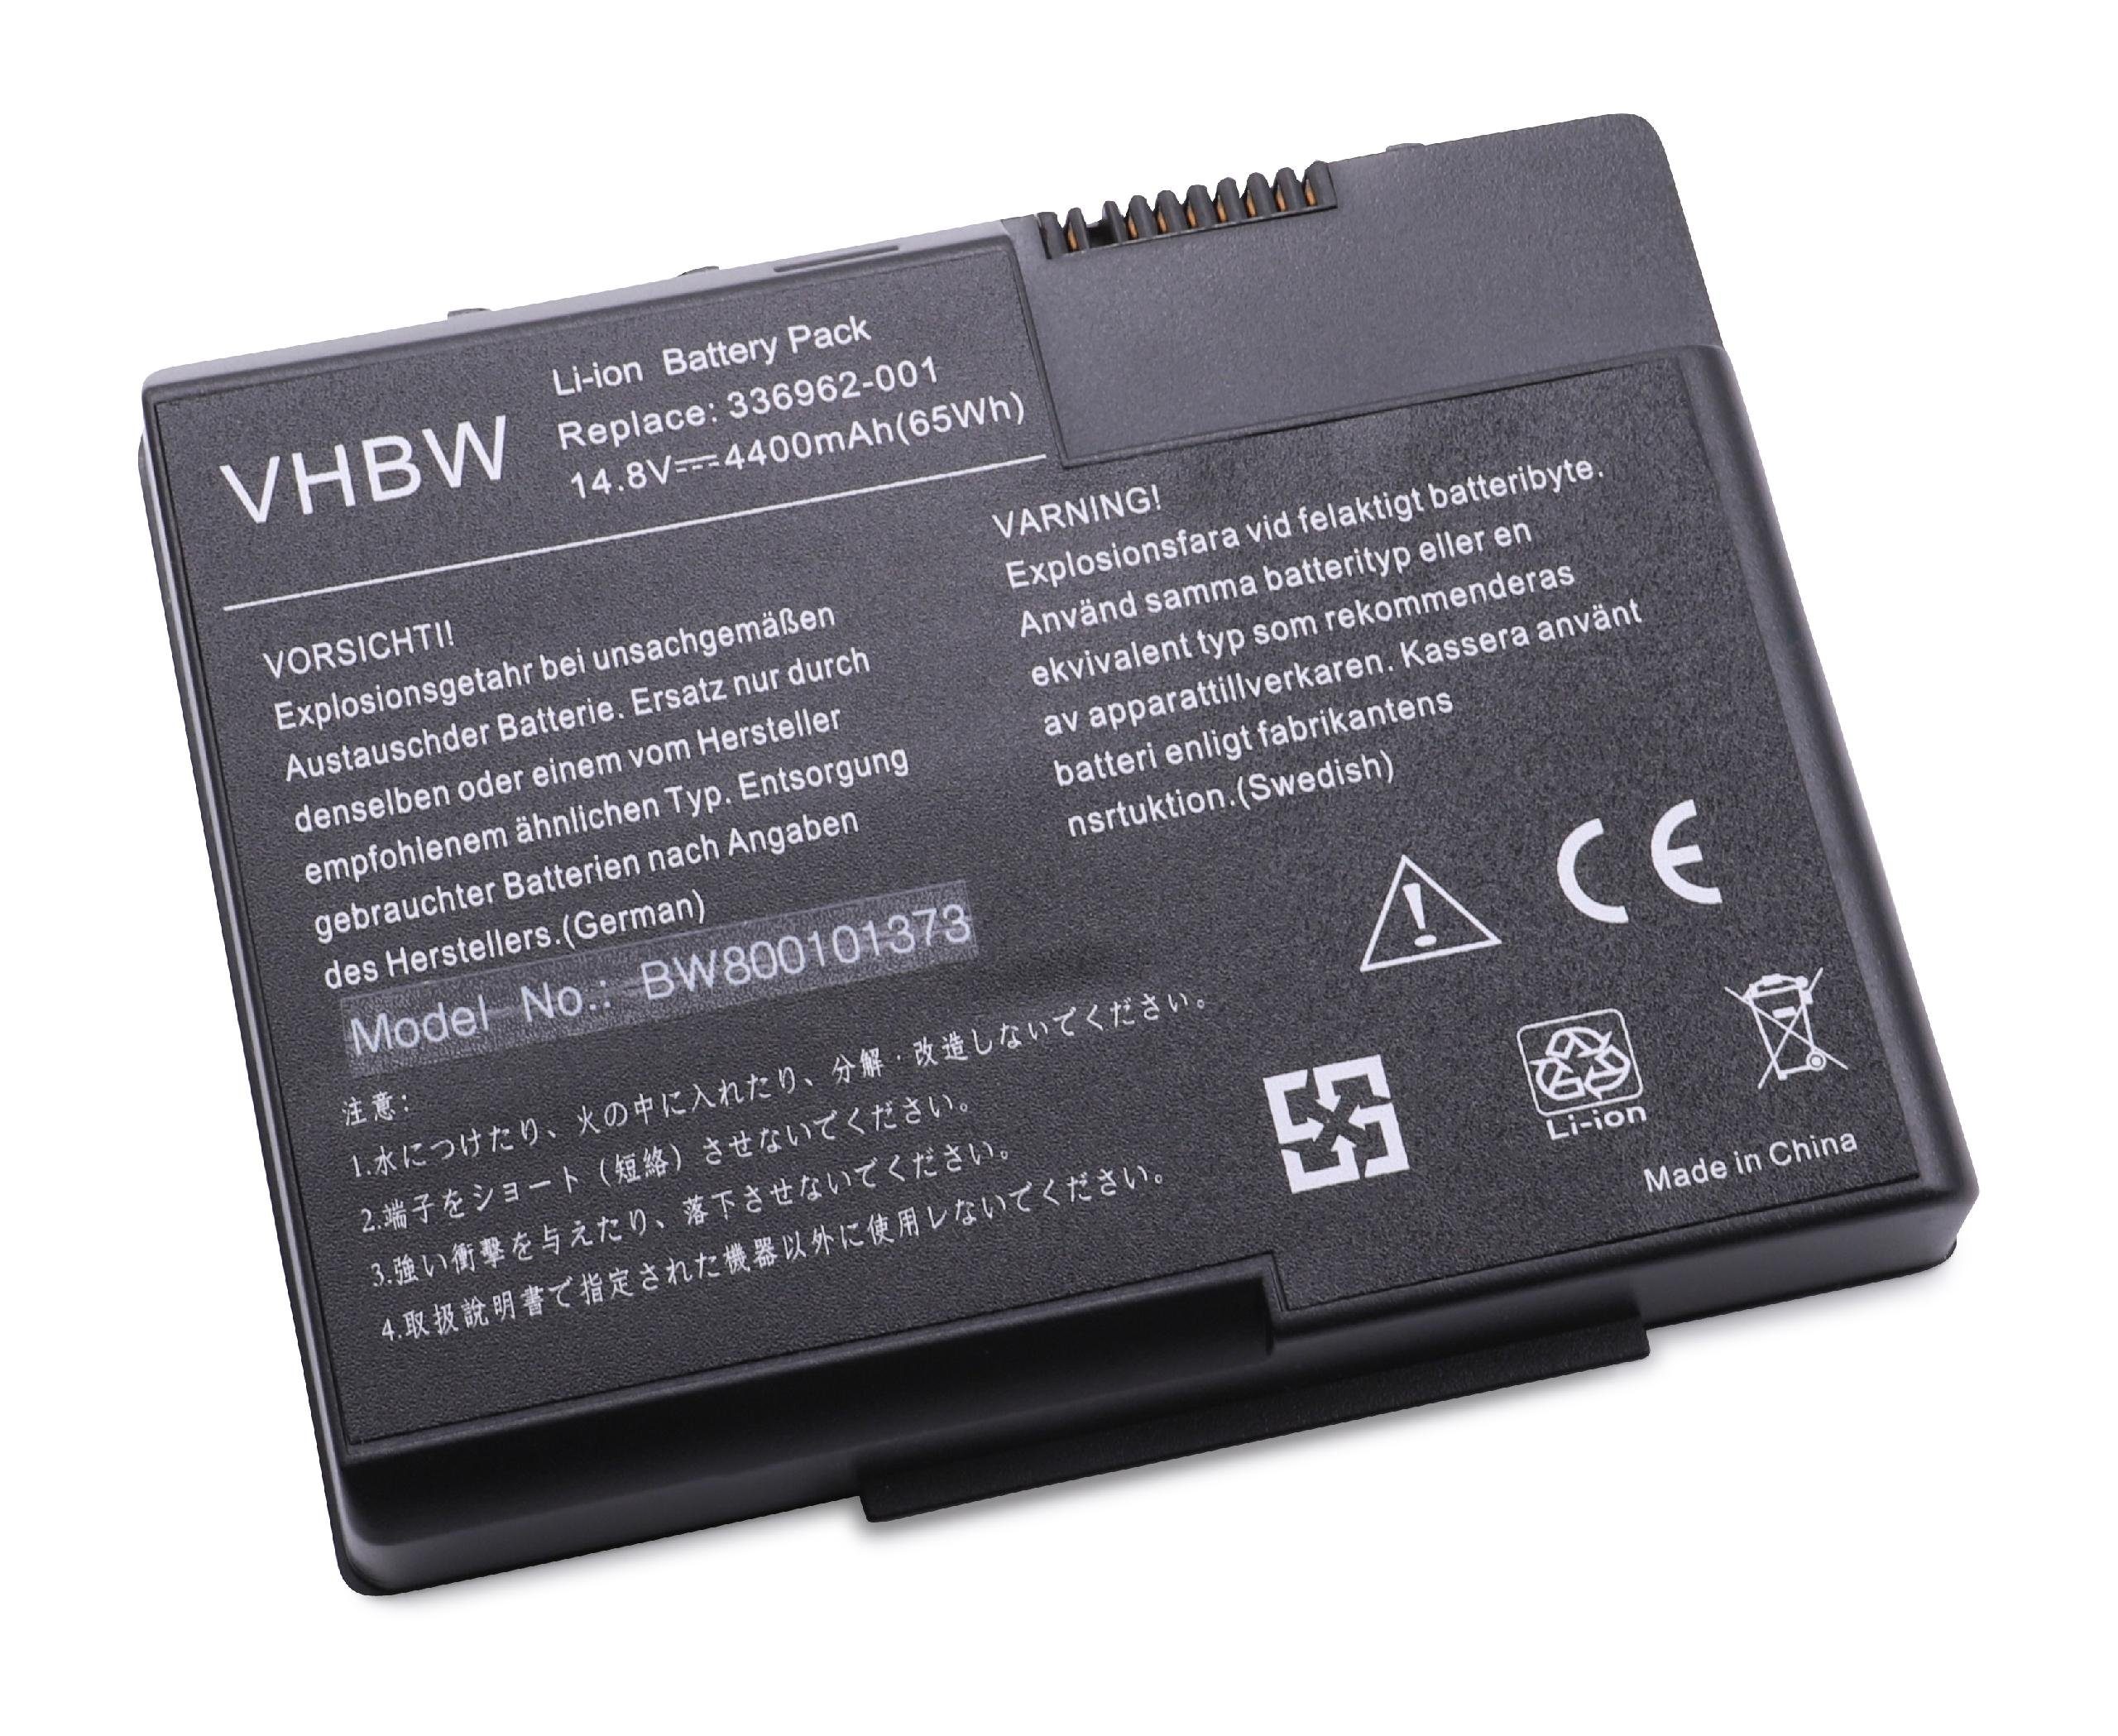 vhbw passend für HP Pavilion zt3280US (DZ306U), zt3280US (DZ306UR), zt3300, Laptop-Akku 4400 mAh